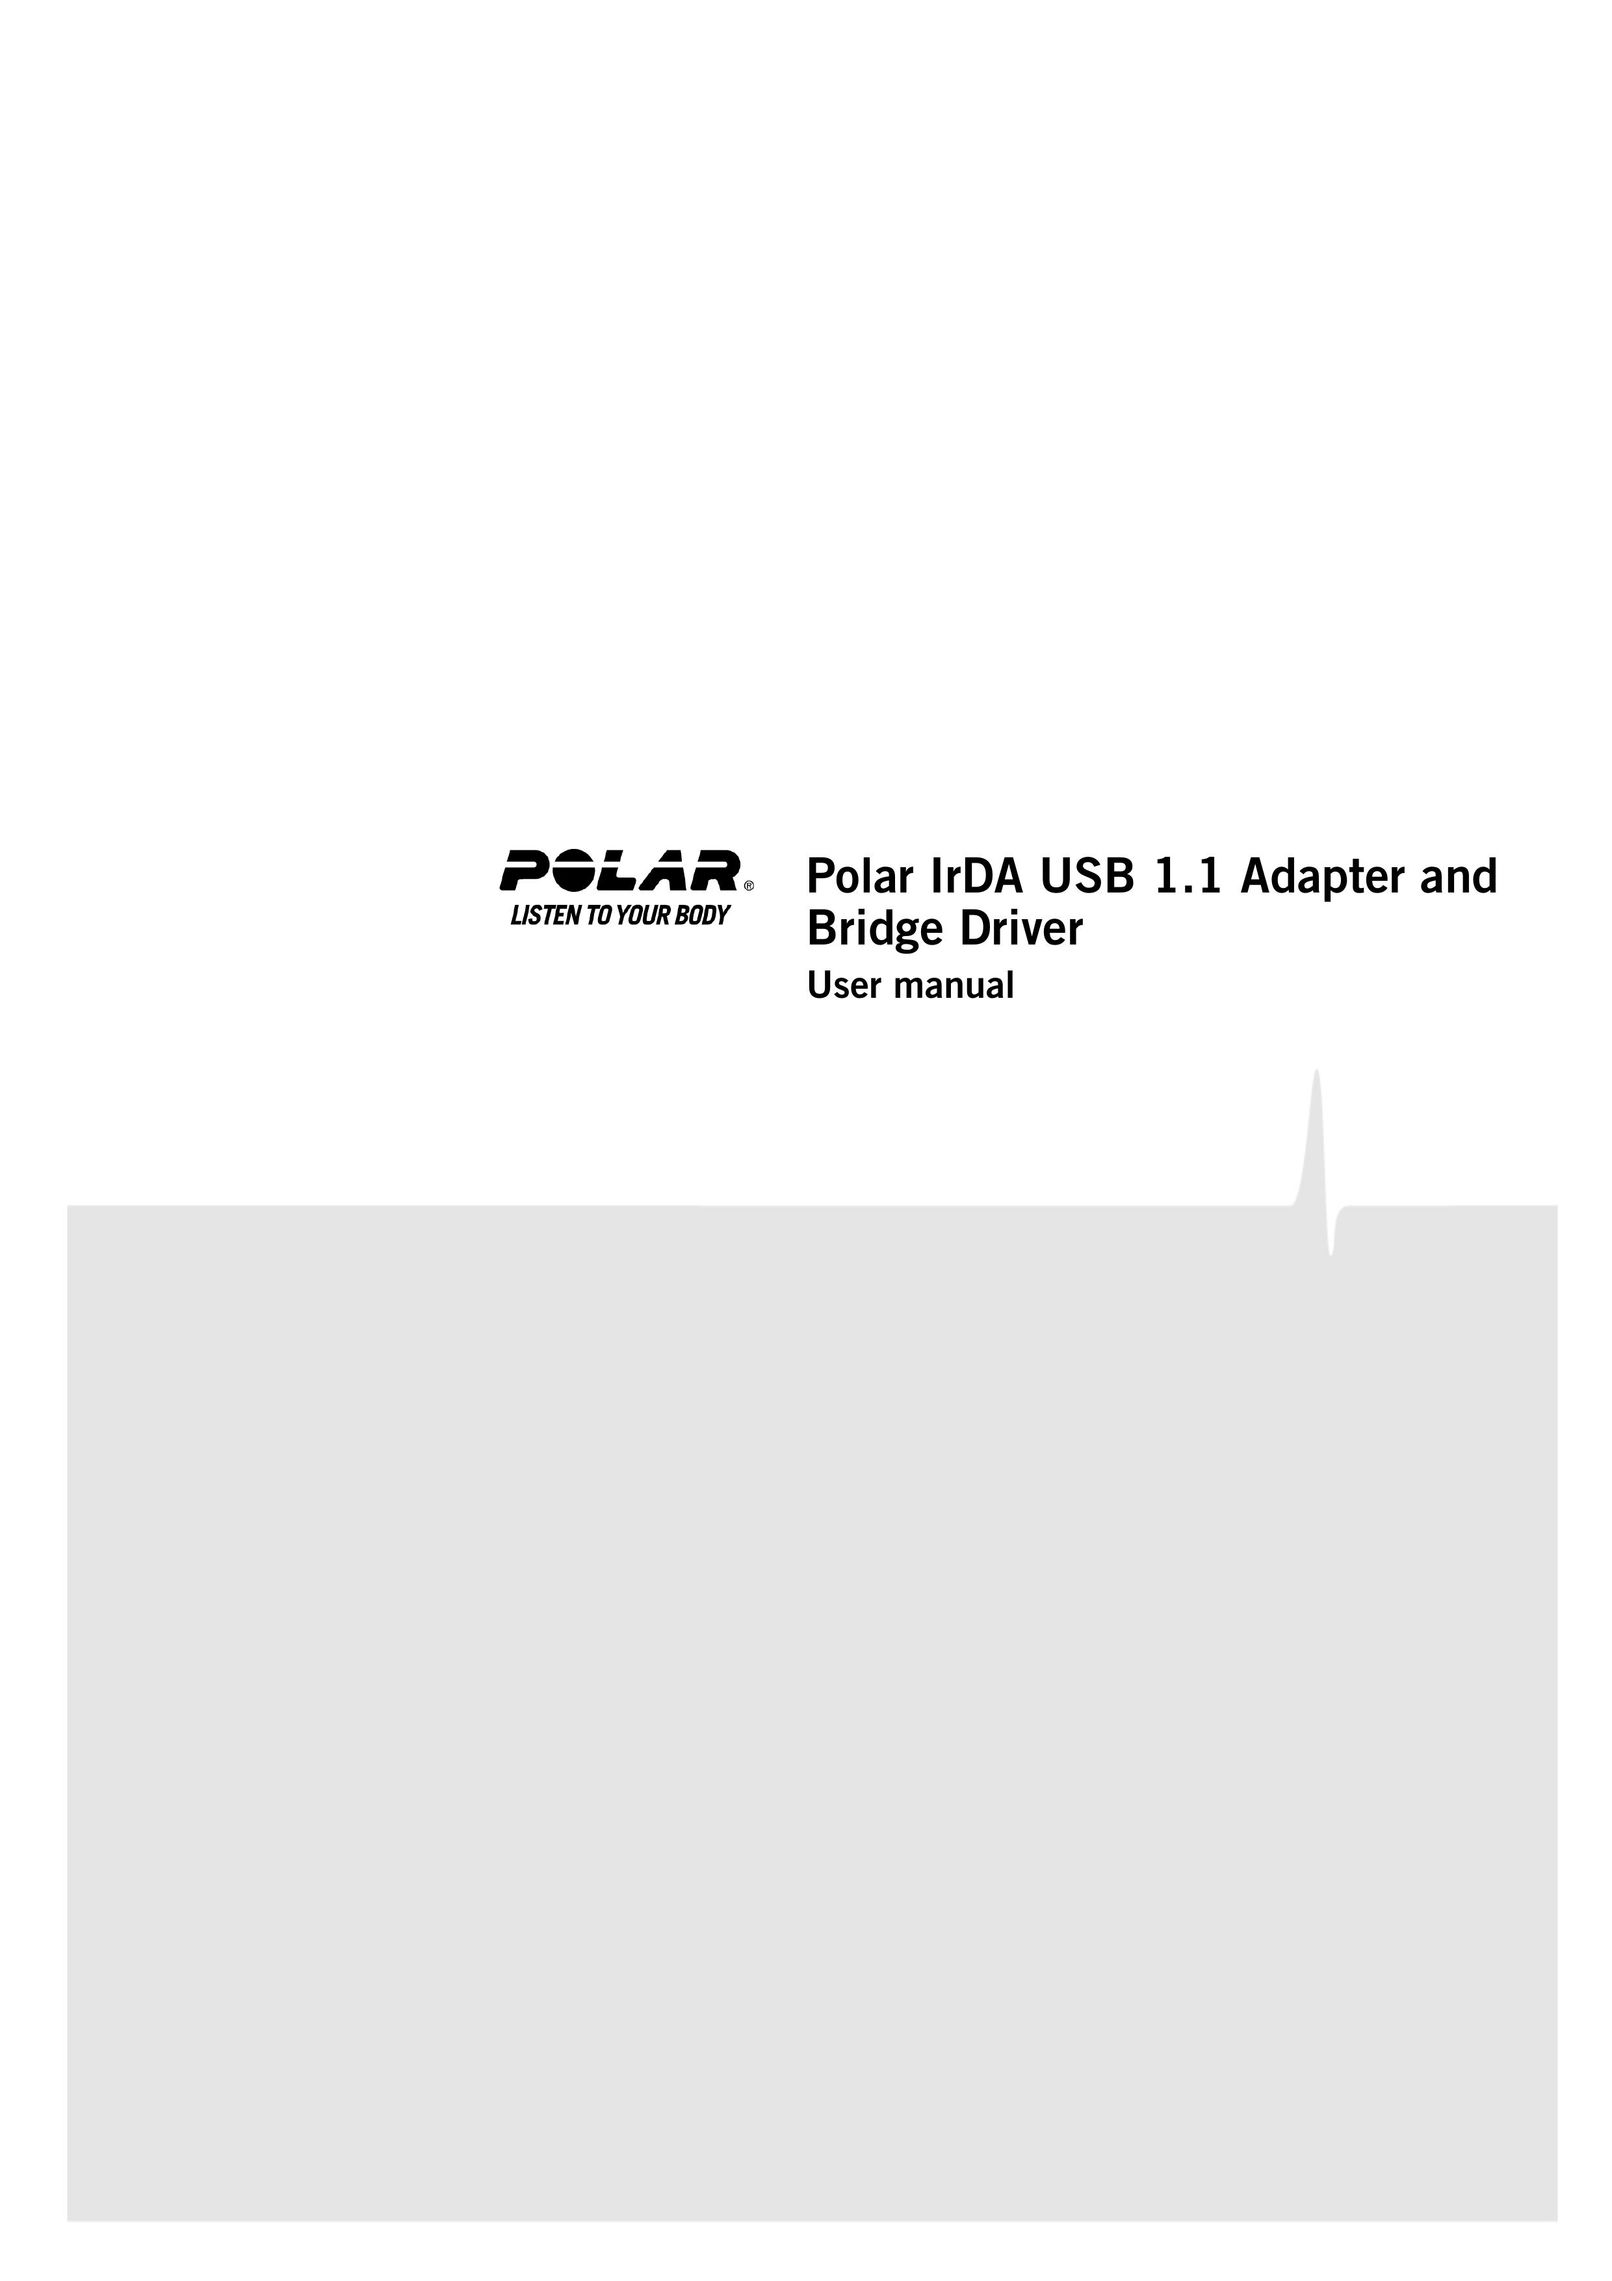 Polar IrDA USB 1.1 Network Router User Manual